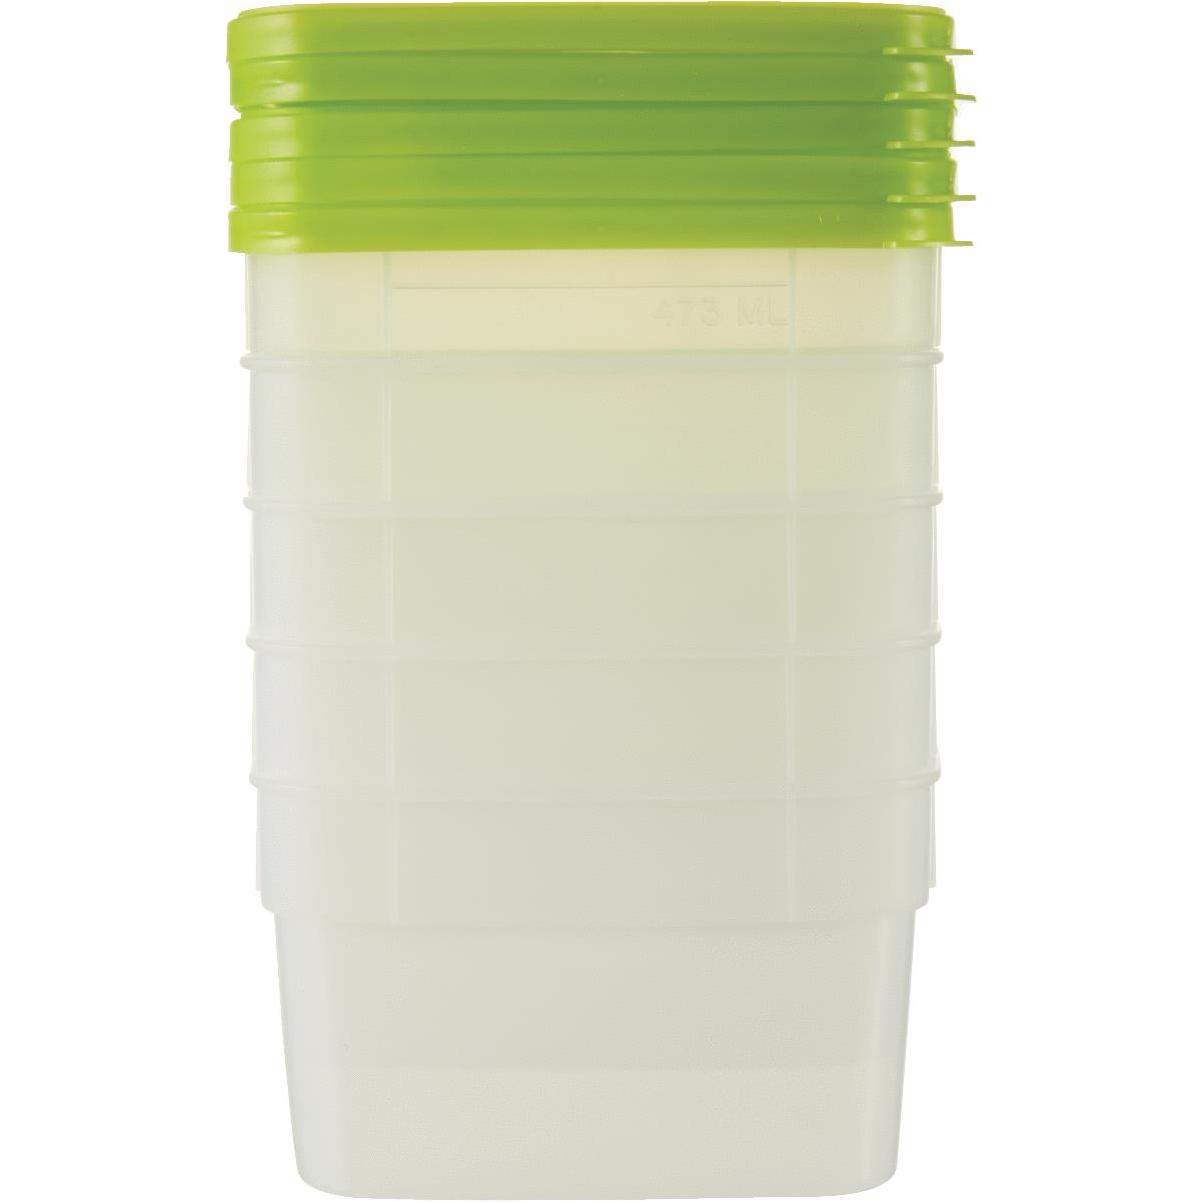 Plastic Freezer Jars 8 oz